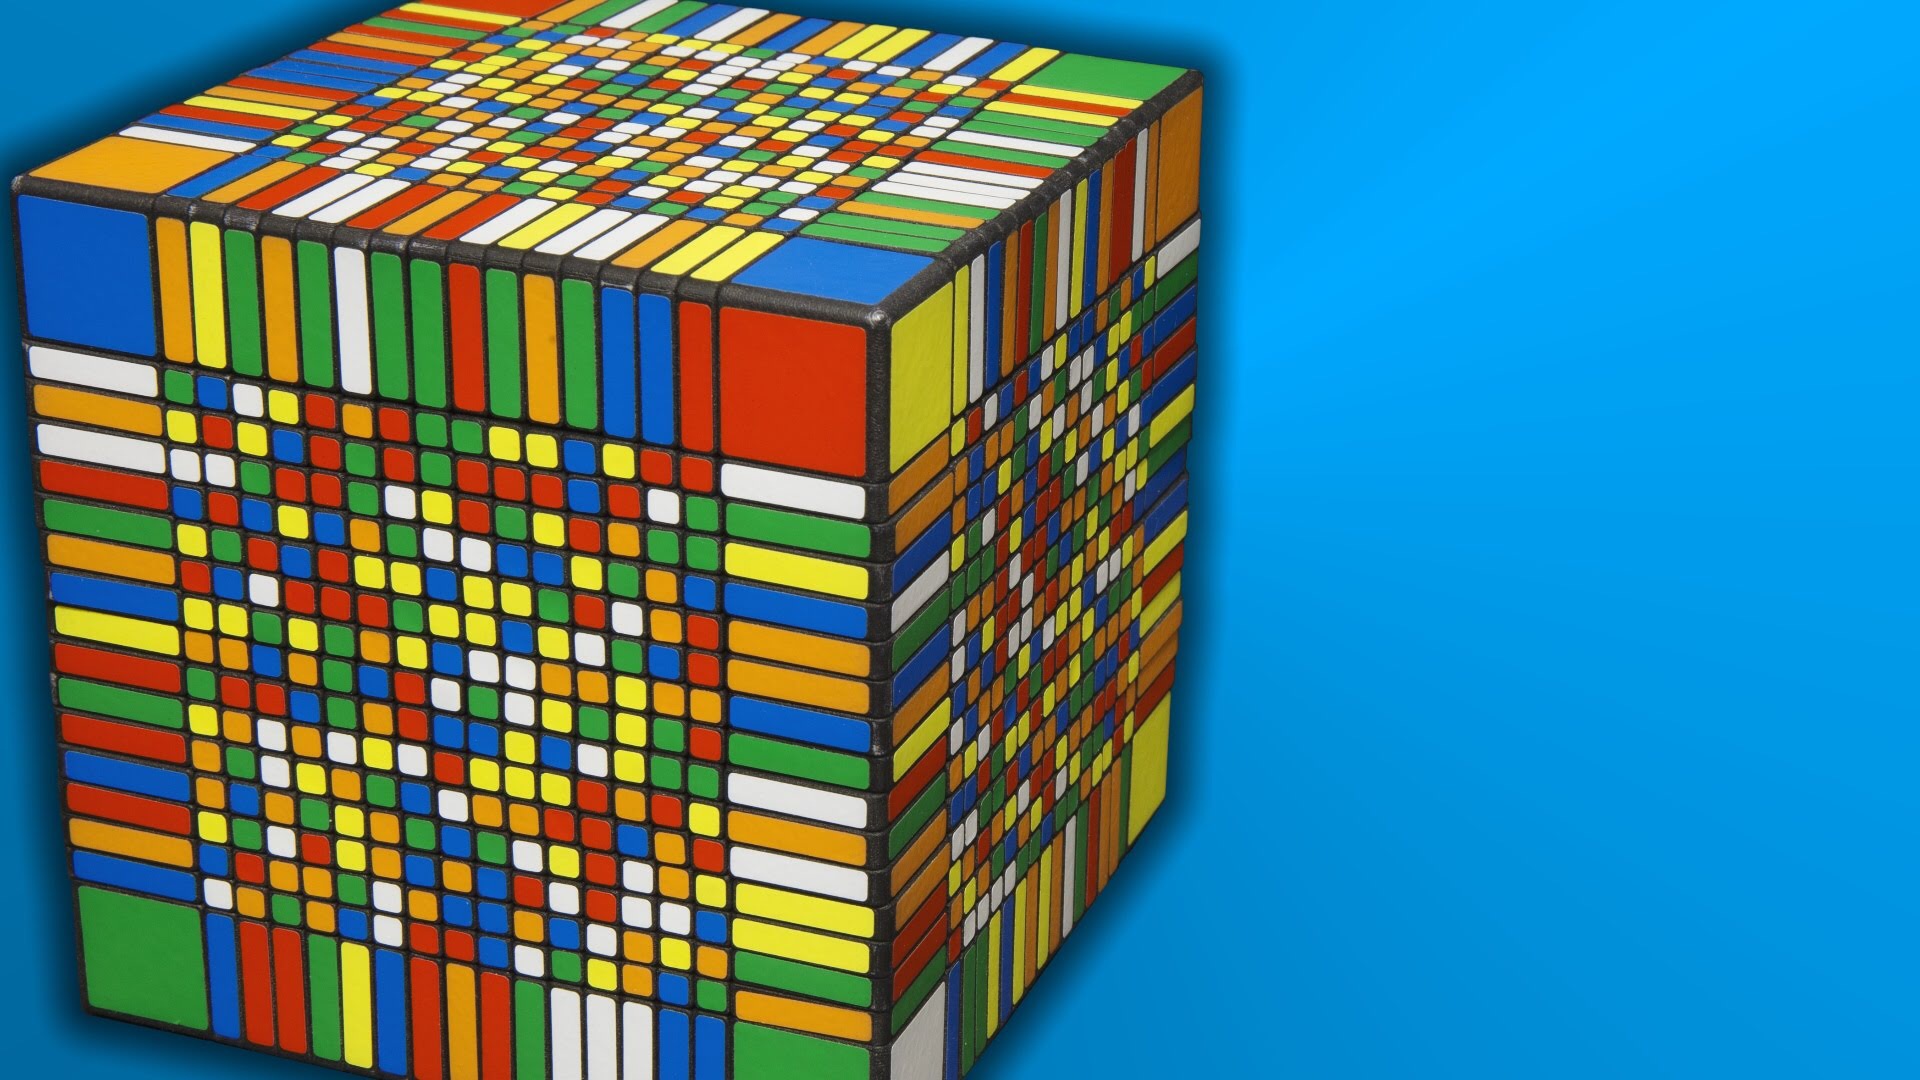 17x17x17 Rubiks Cube Solve Time Lapse LIB Magazine.